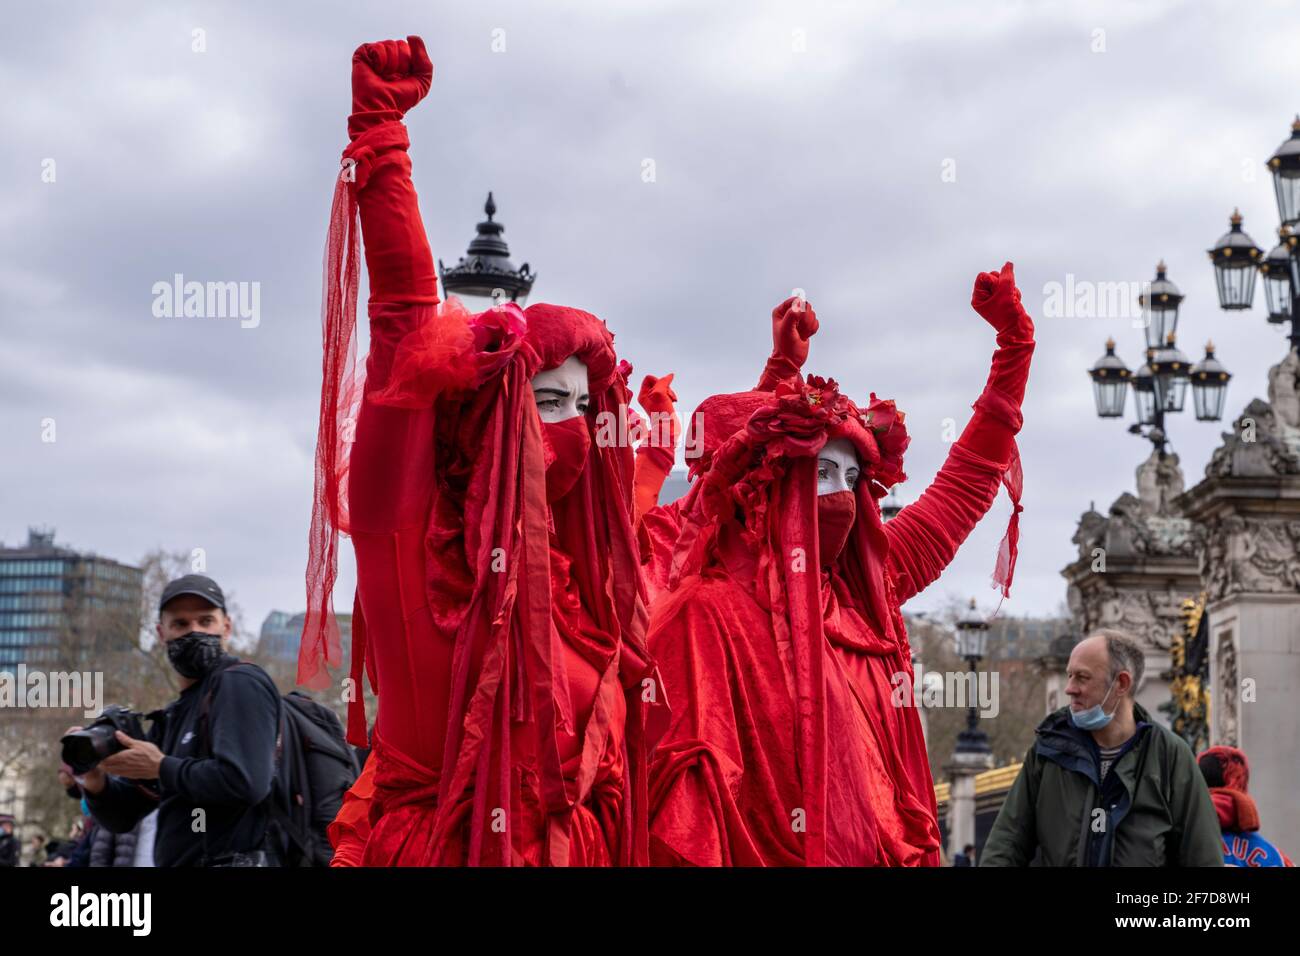 LONDRA, UK - 03 Aprile 2021: La Brigata Rossa, ribellione estinzione. Manifestanti vestiti in abiti rossi con facce bianche a uccidere la protesta di legge. Foto Stock